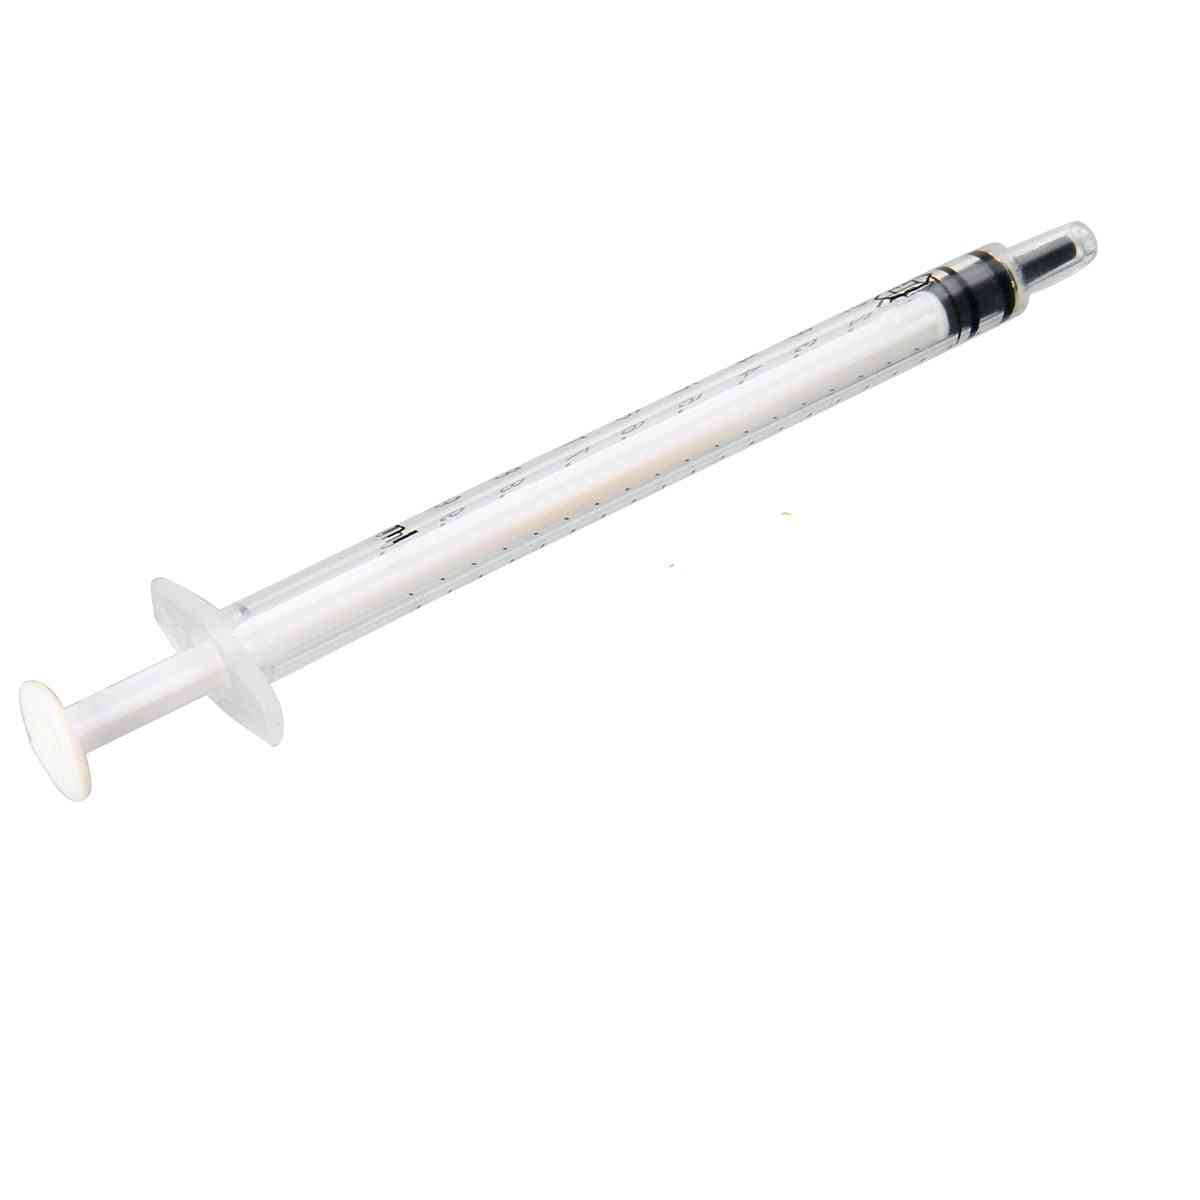 20 piezas 1 ml jeringa de inyección de plástico desechable para rellenar herramientas de medición de nutrientes - líquidos de mezcla de alimentación sin agujas -